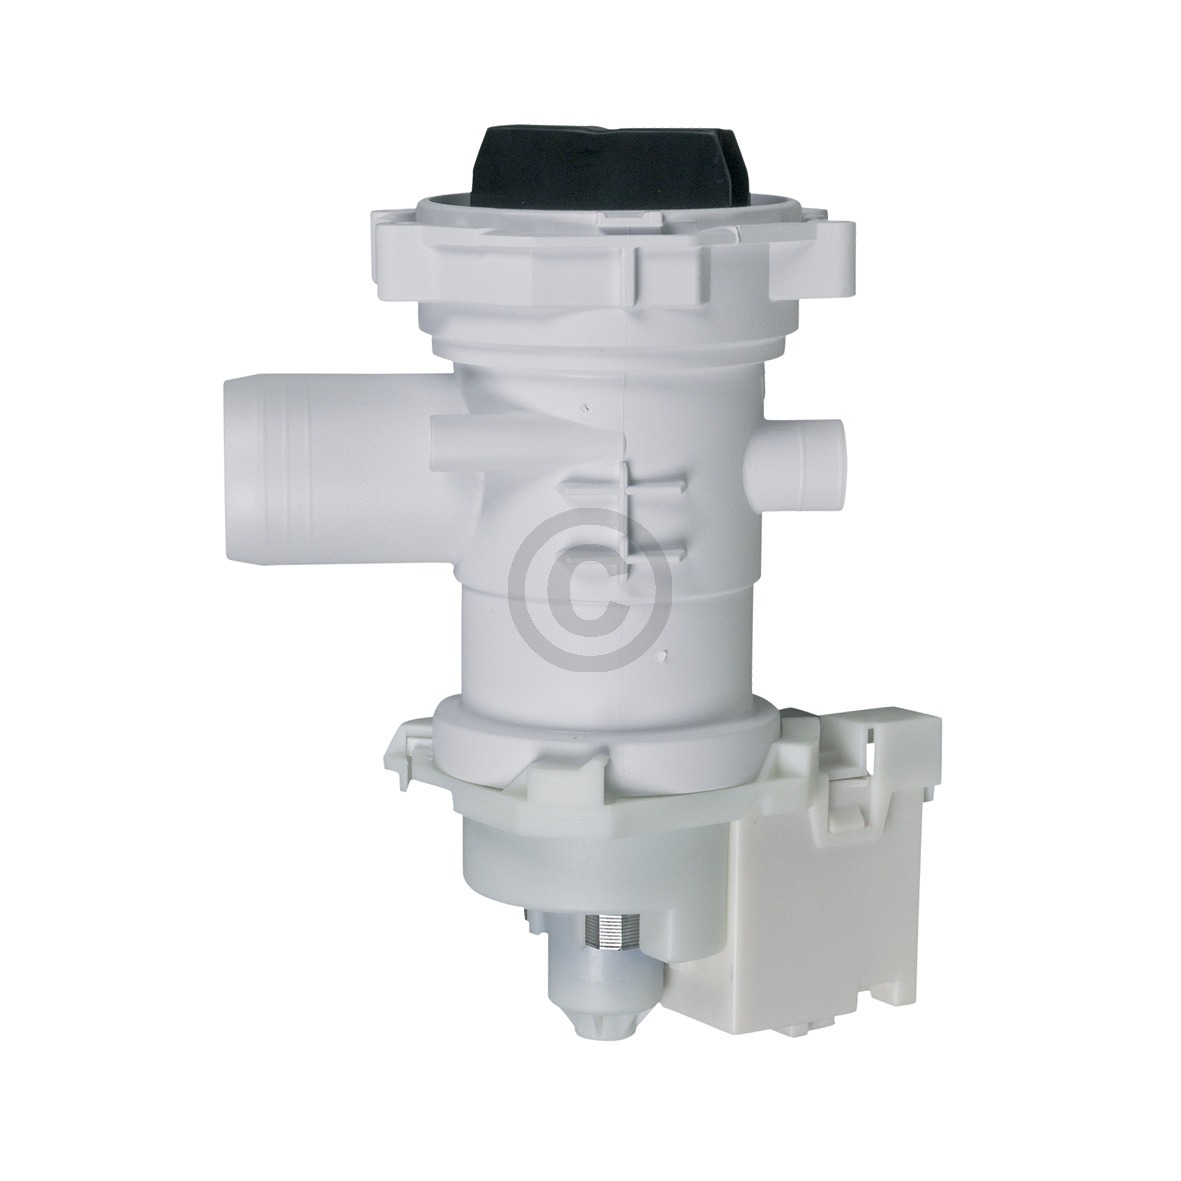 Ablaufpumpe wie Hotpoint C00282341 Copreci mit Pumpenkopf und Sieb für Waschmaschine Waschtrockner